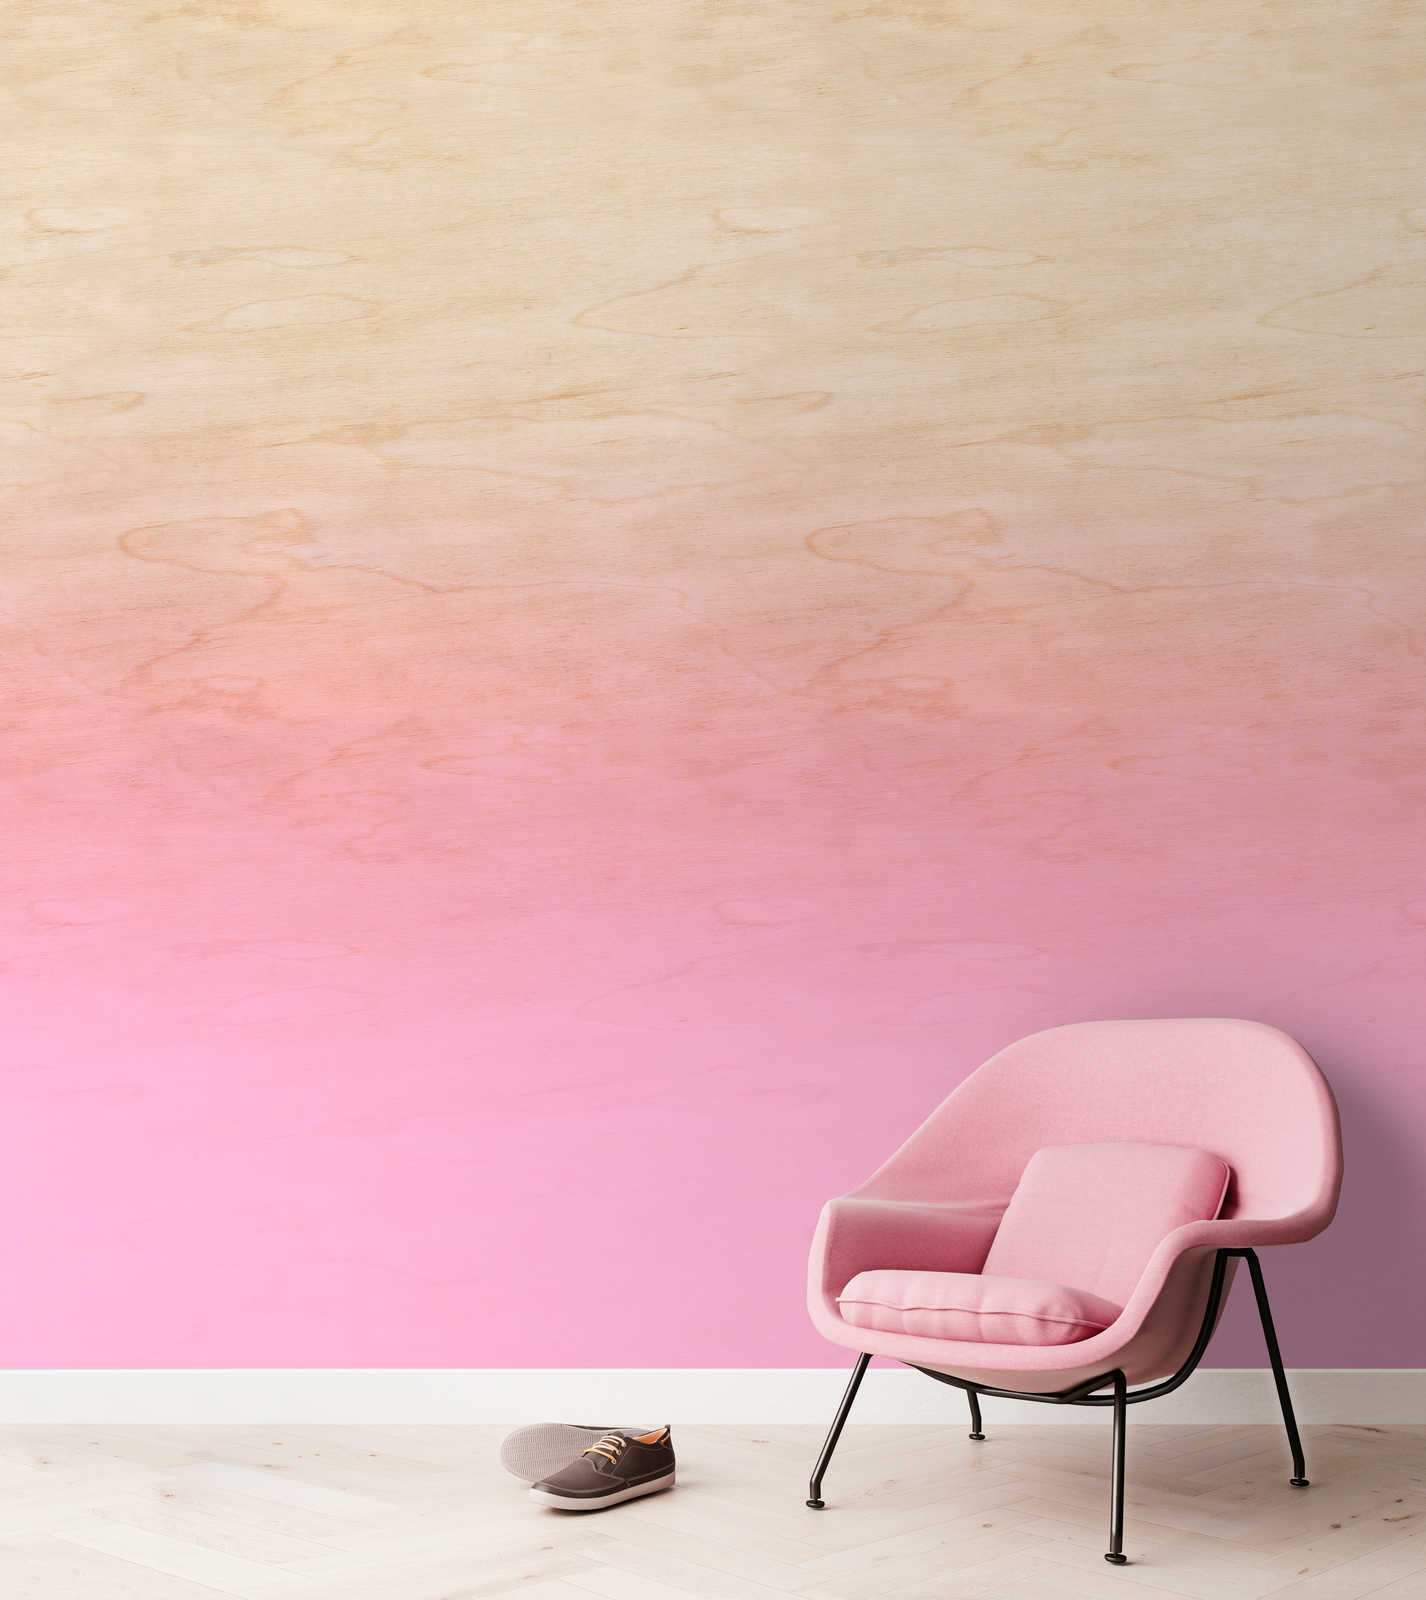             Atelier 1 - Papier peint Effet d'ombre rose & grain de bois
        